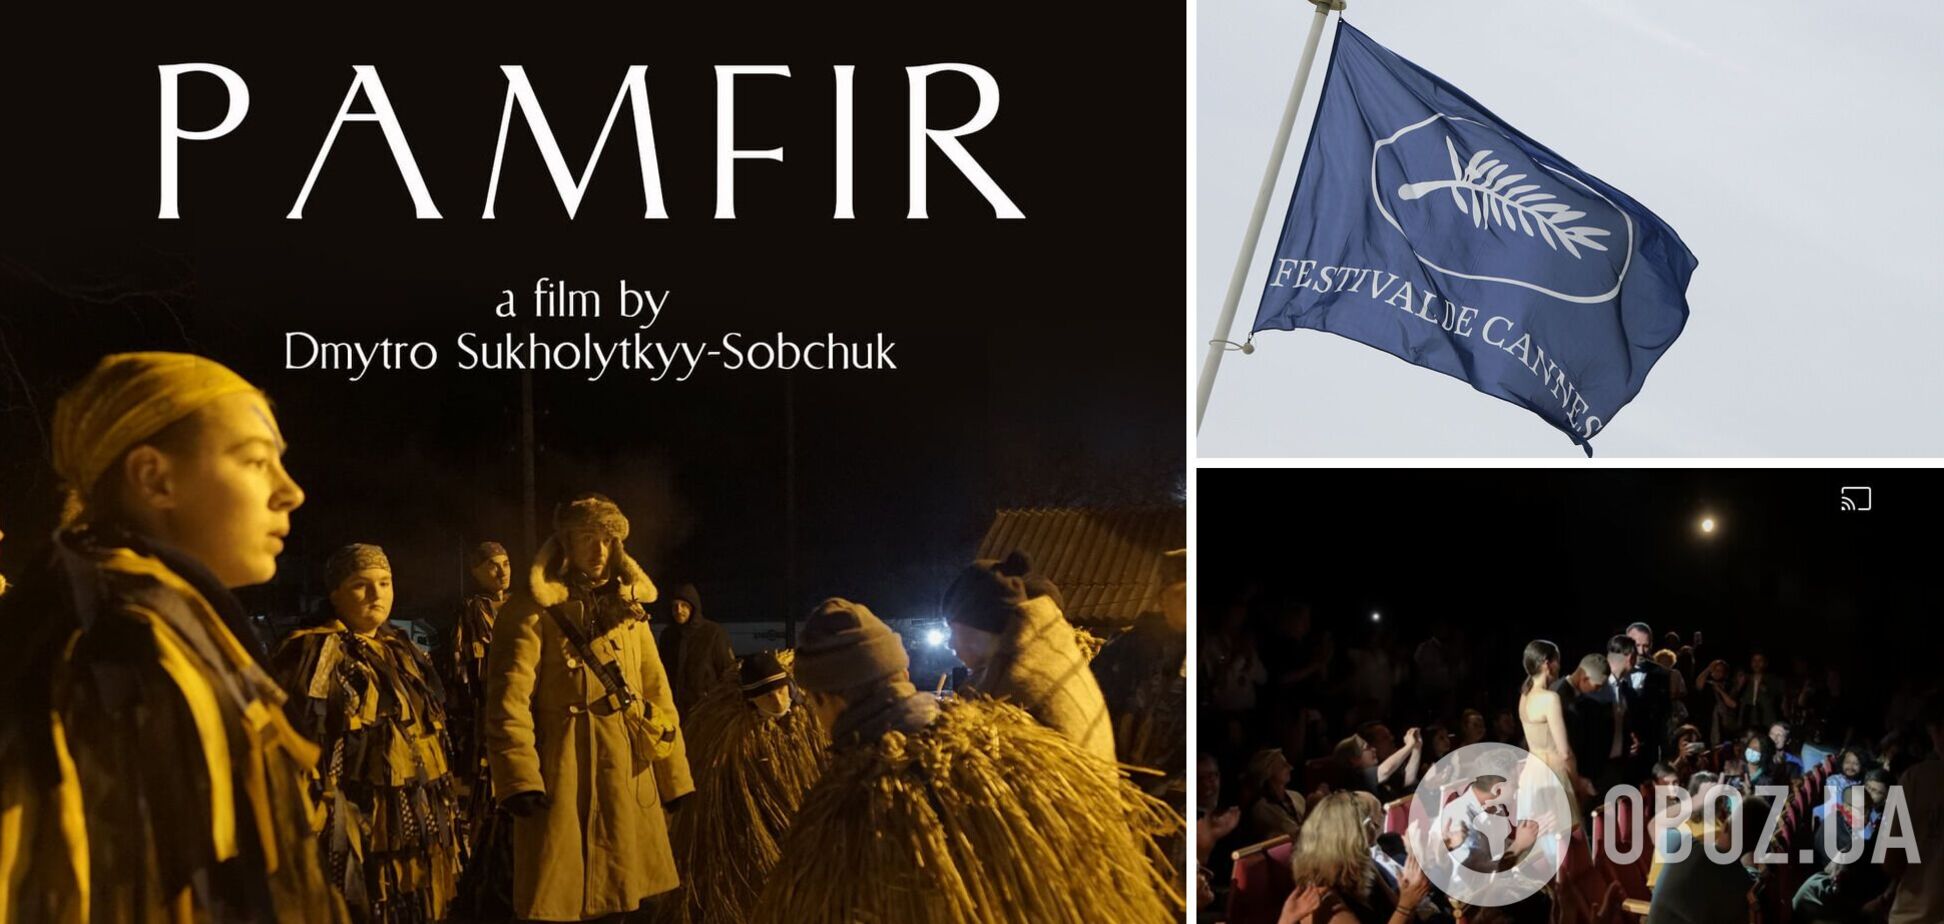 Украинскому фильму 'Памфир' аплодировали рекордные 6 минут после премьеры на Каннском фестивале